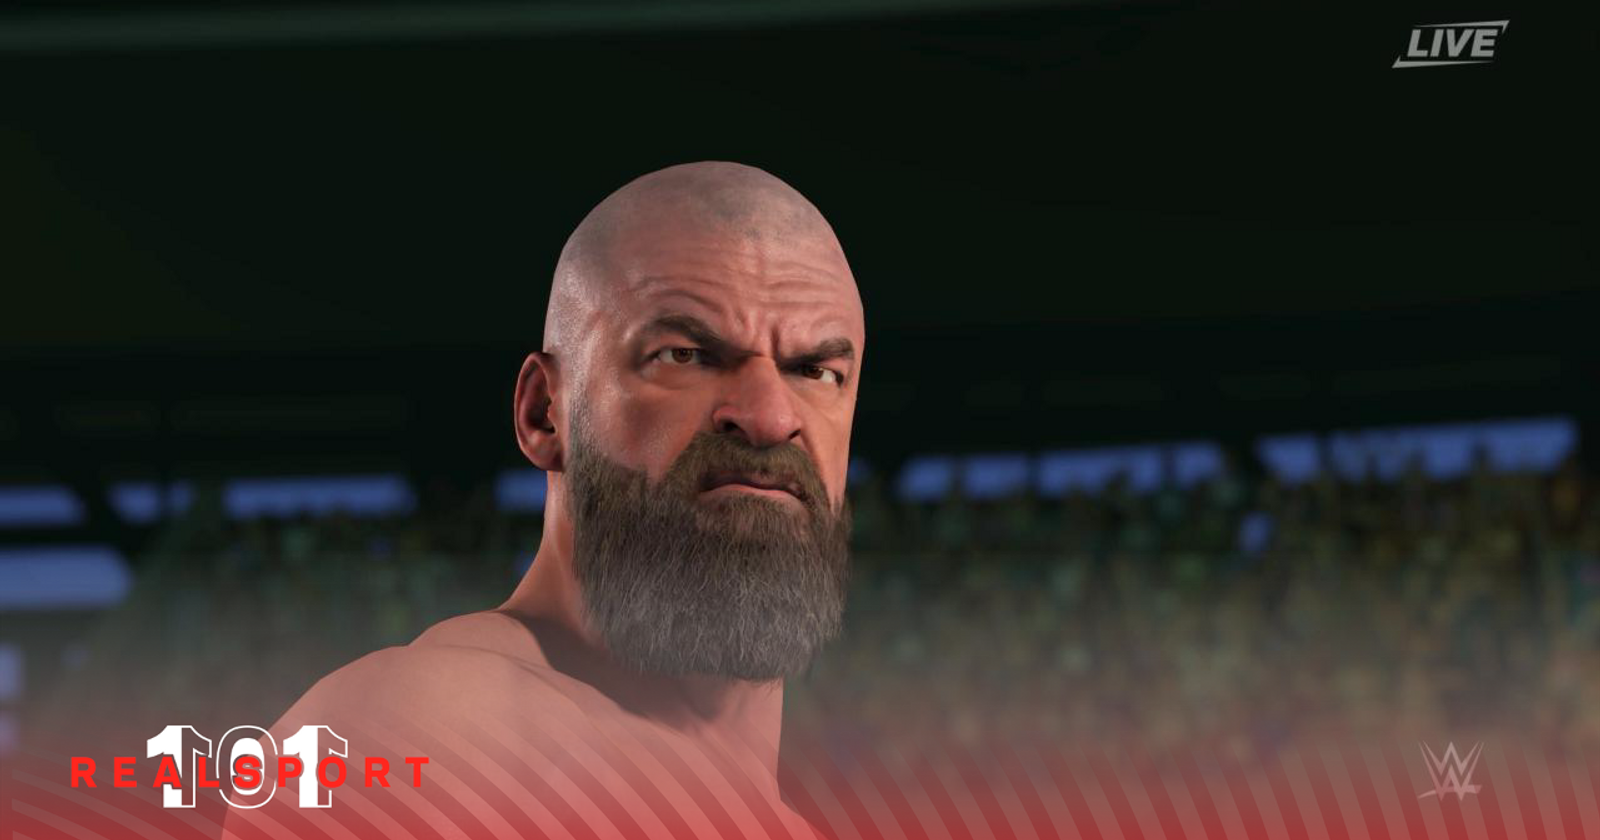 WWE 2K22 CM Punk Face Scan Upload by MisterFiendX